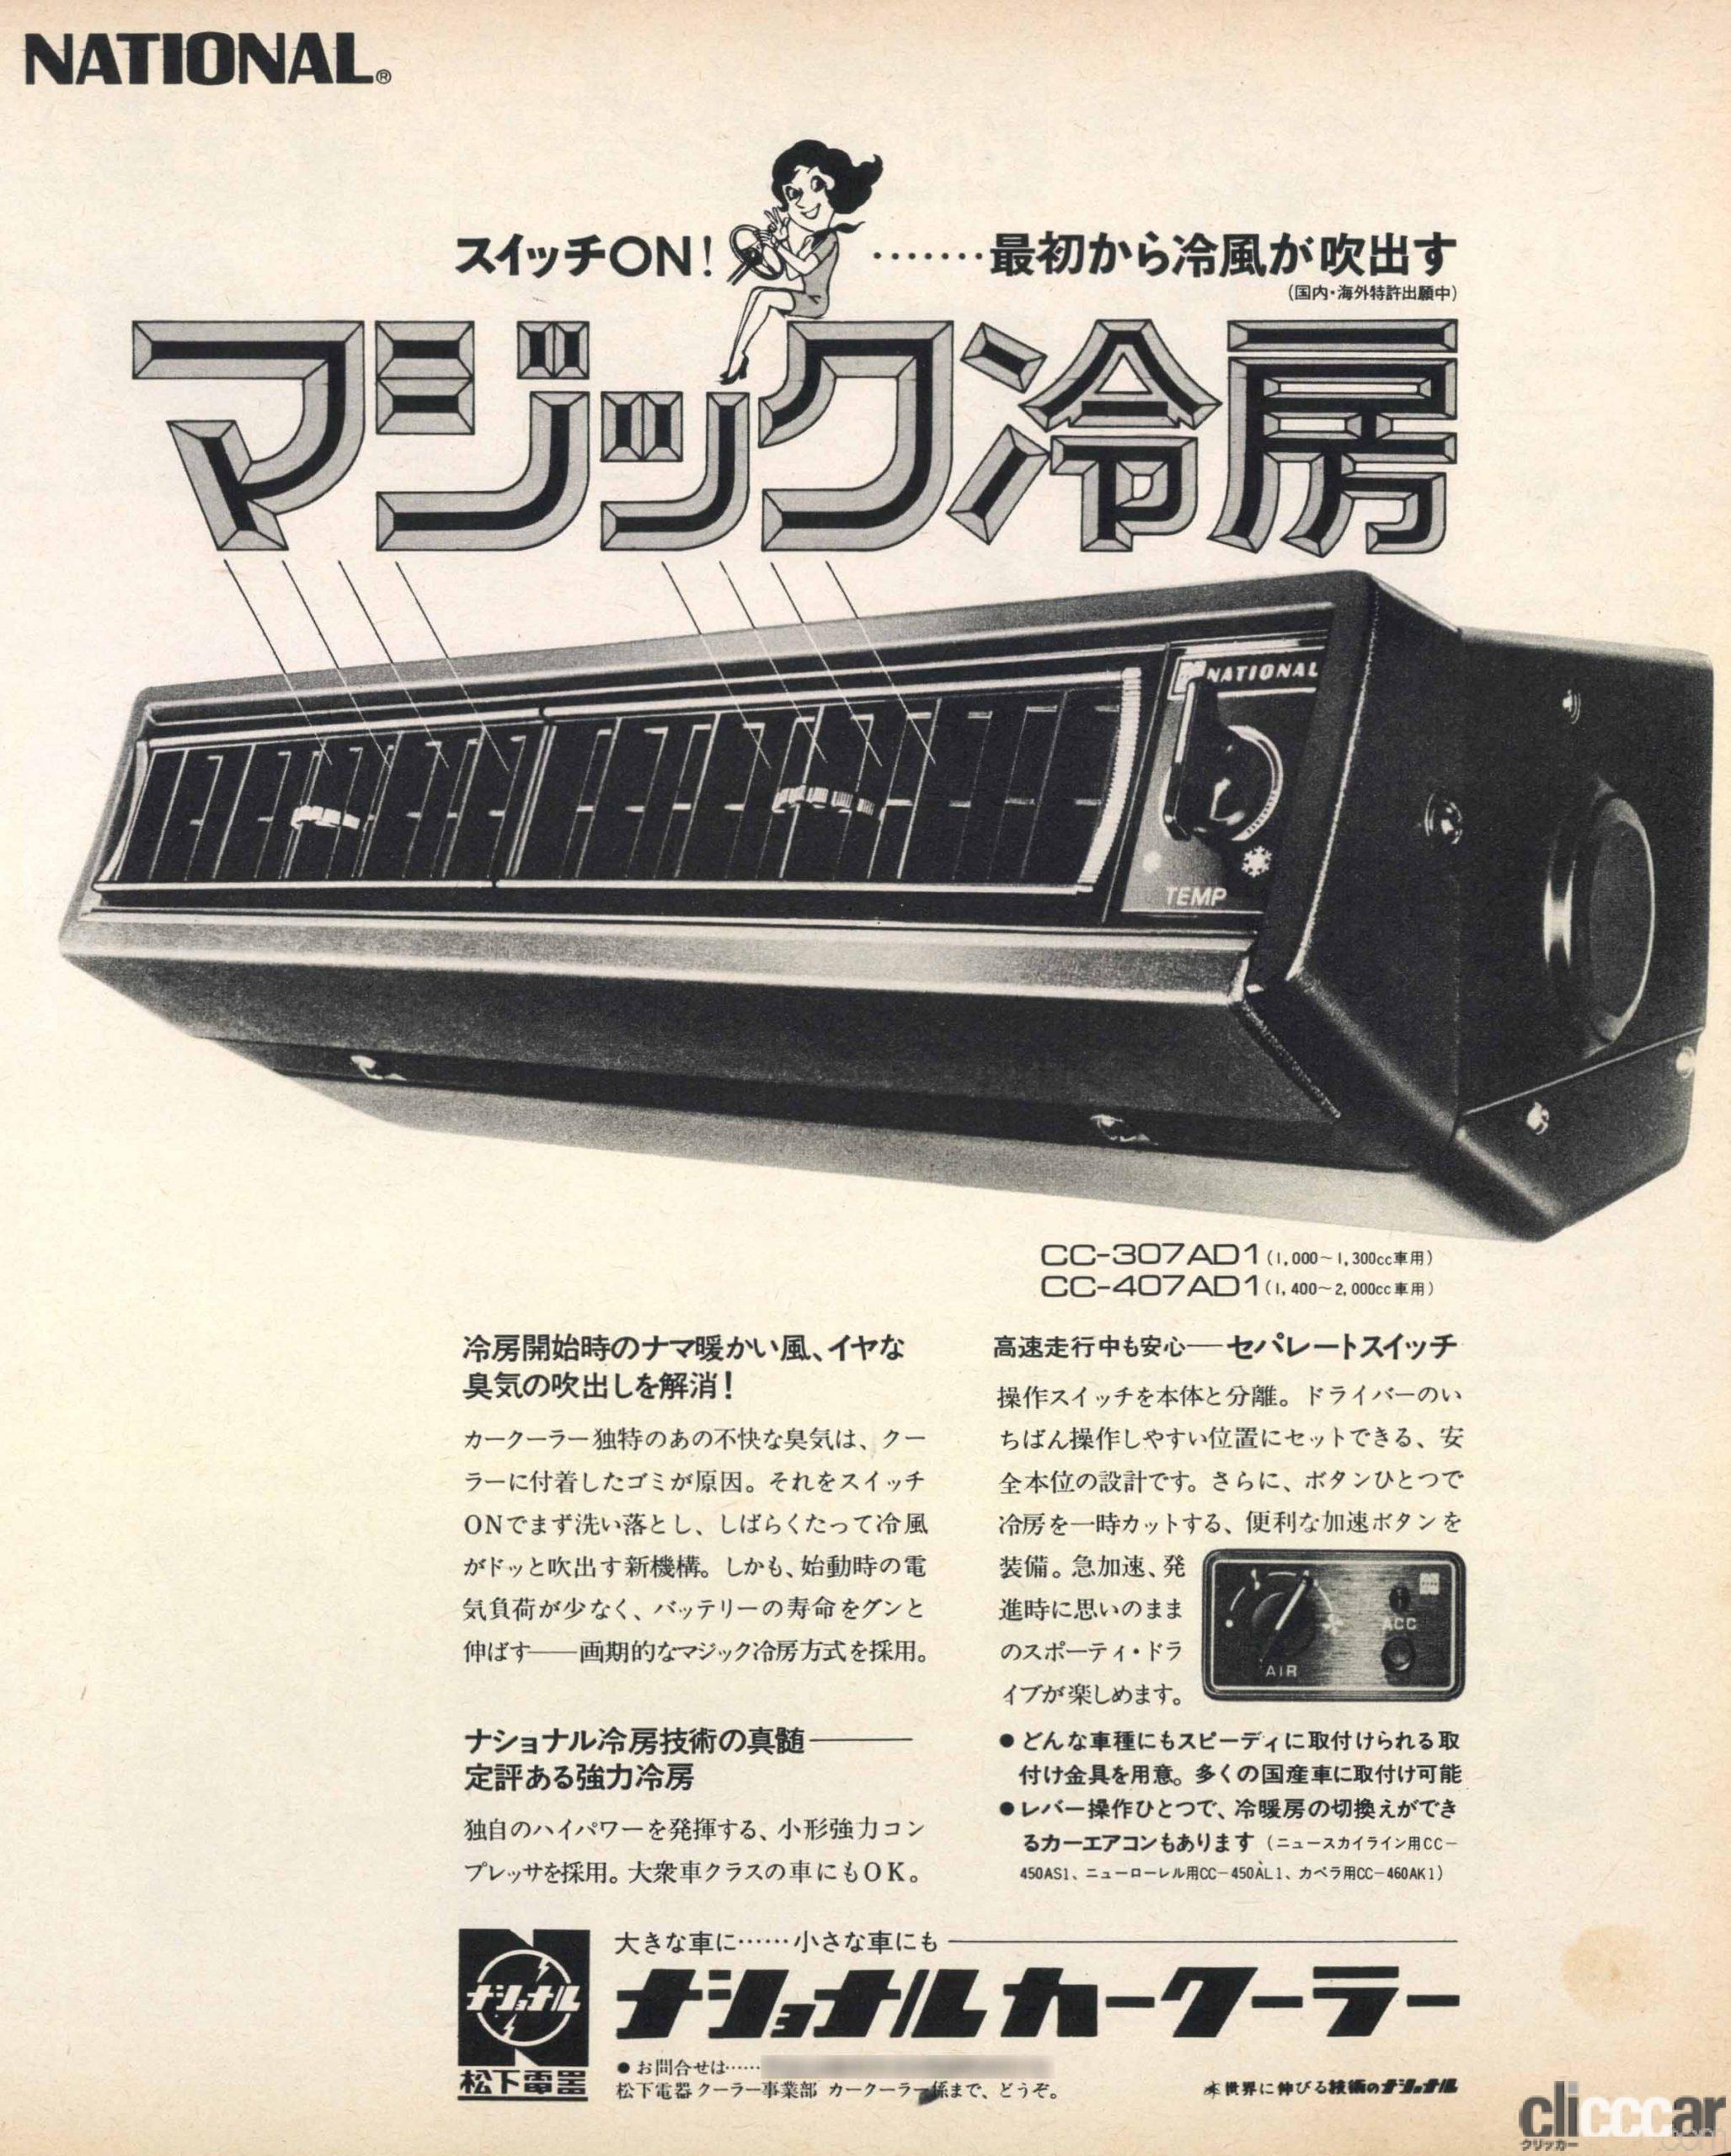 50 80年代のクーラー エアコンの広告から見えてくるのは 涼しさはあこがれ だった Clicccar Com